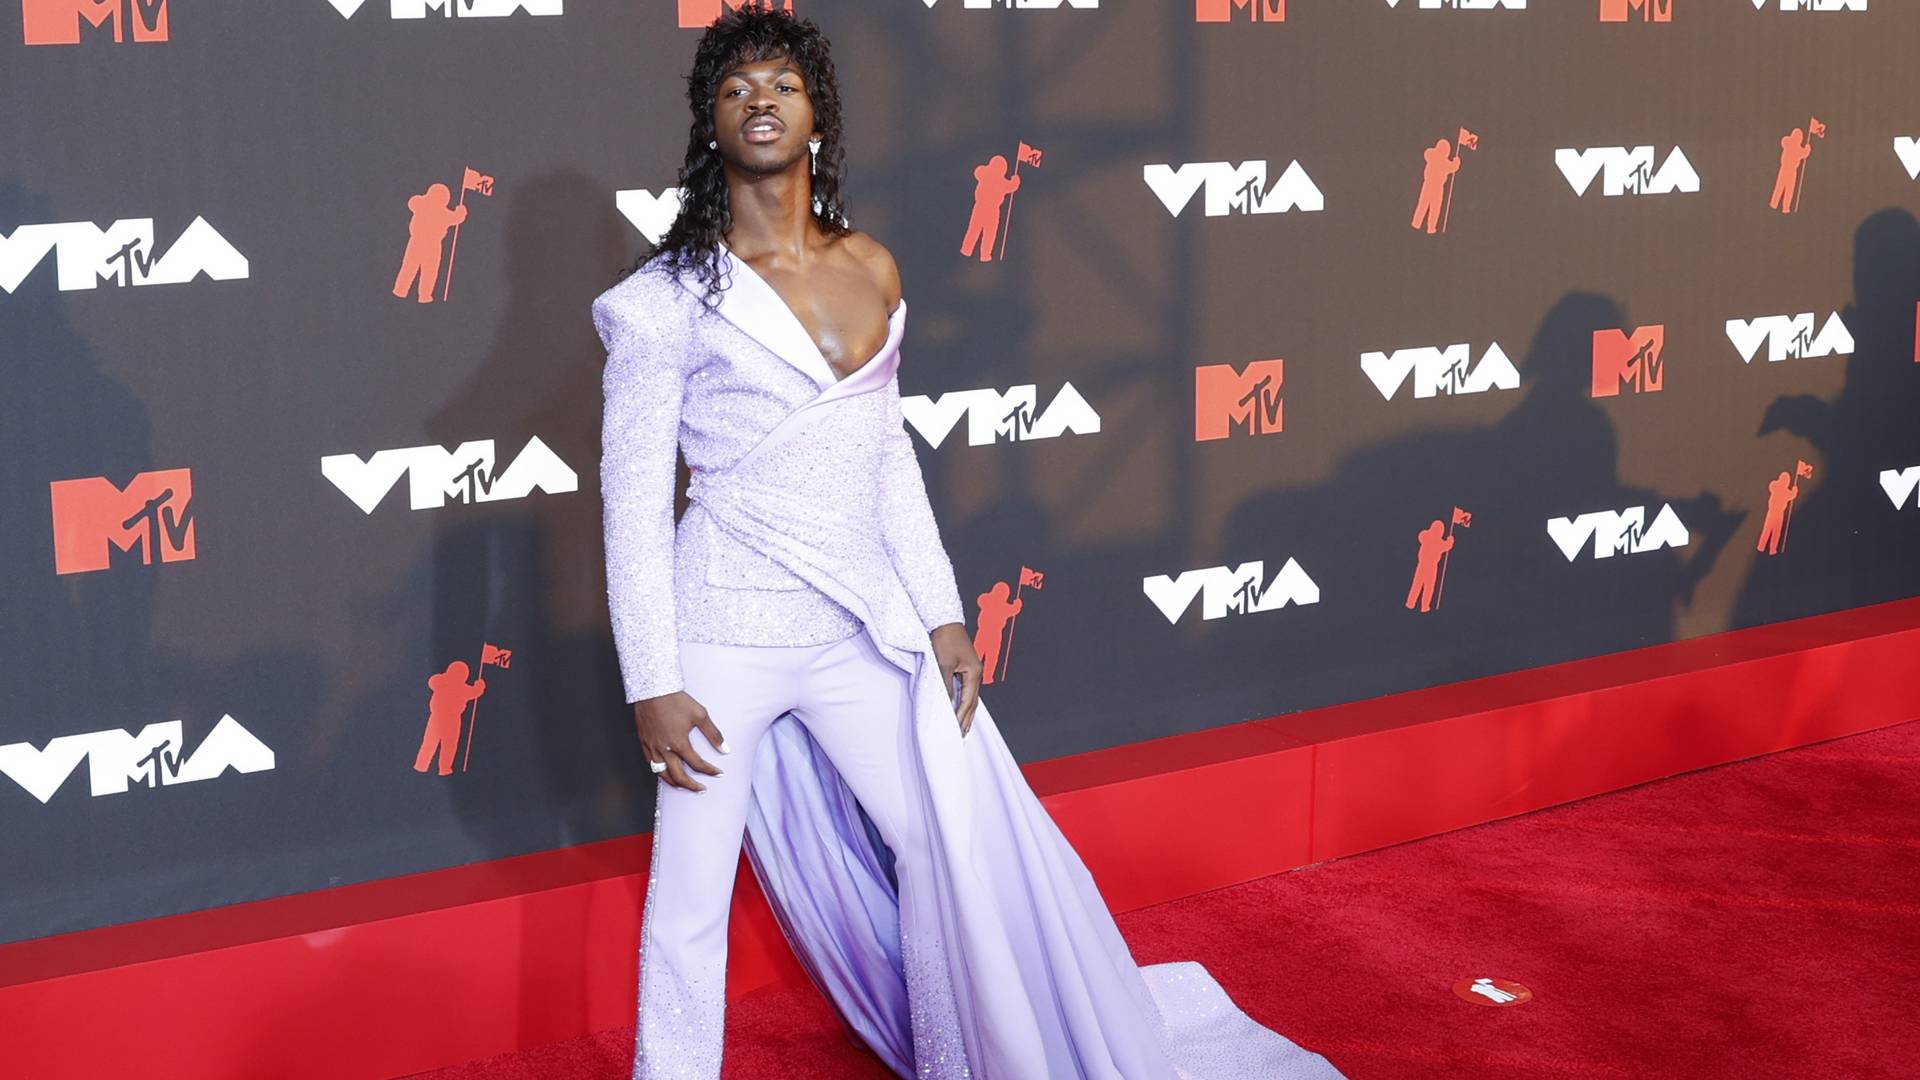 Crveni tepih MTV VMA nagrada je stvoren za preterivanje - ove godine više nego ikad